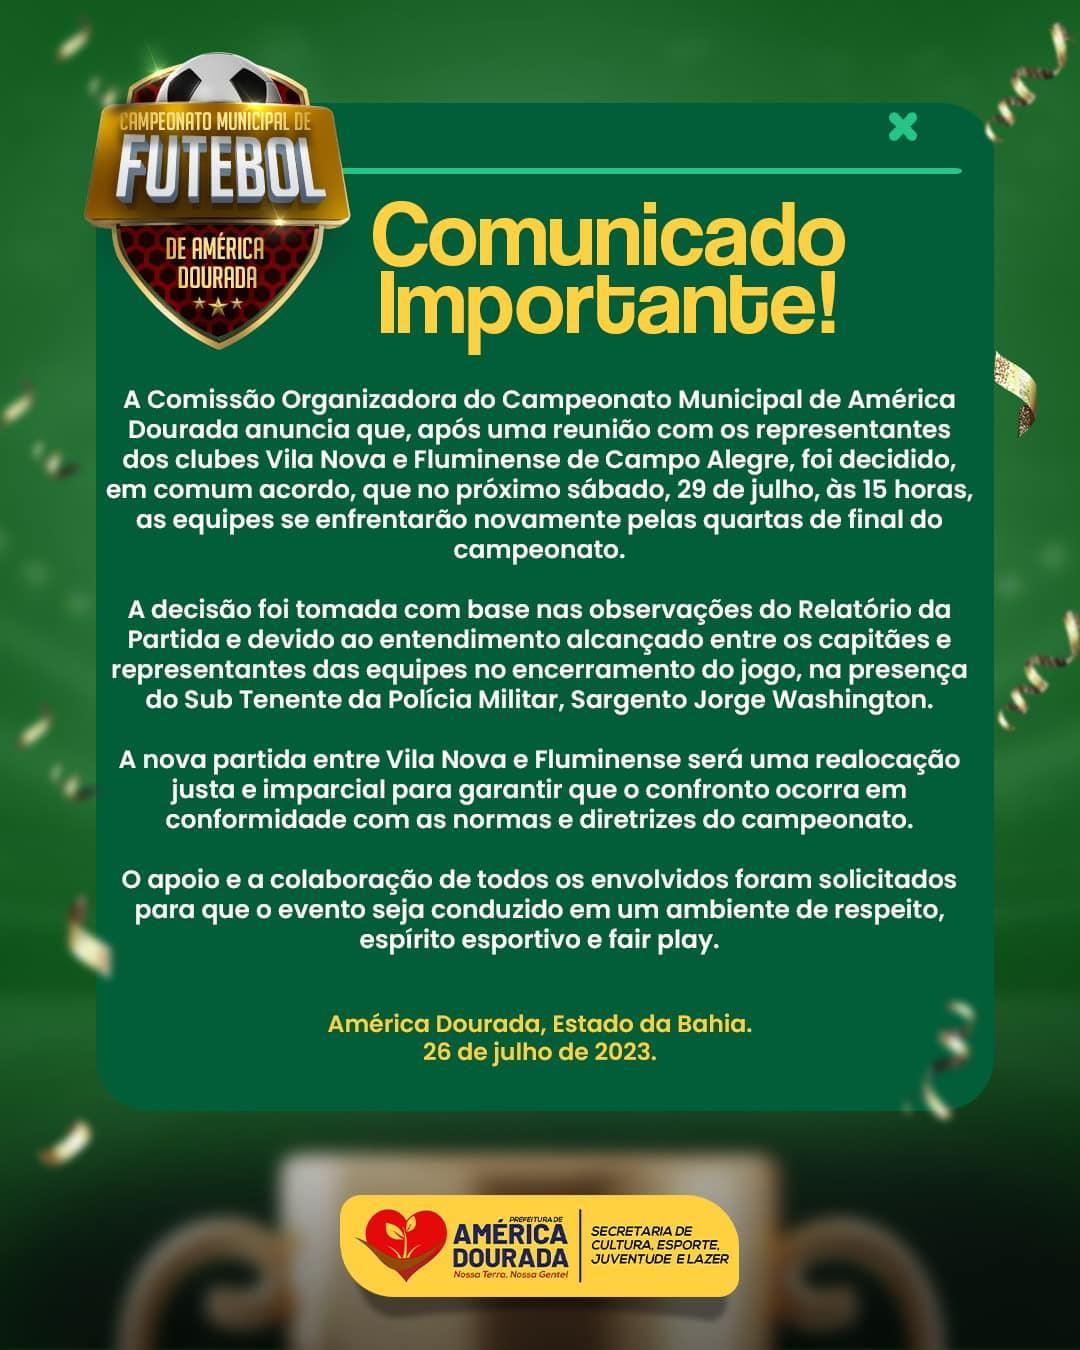 Comunicado oficial sobre a partida entre Vila Nova e Fluminense pelas quartas de final do Campeonato Municipal de América Dourada!